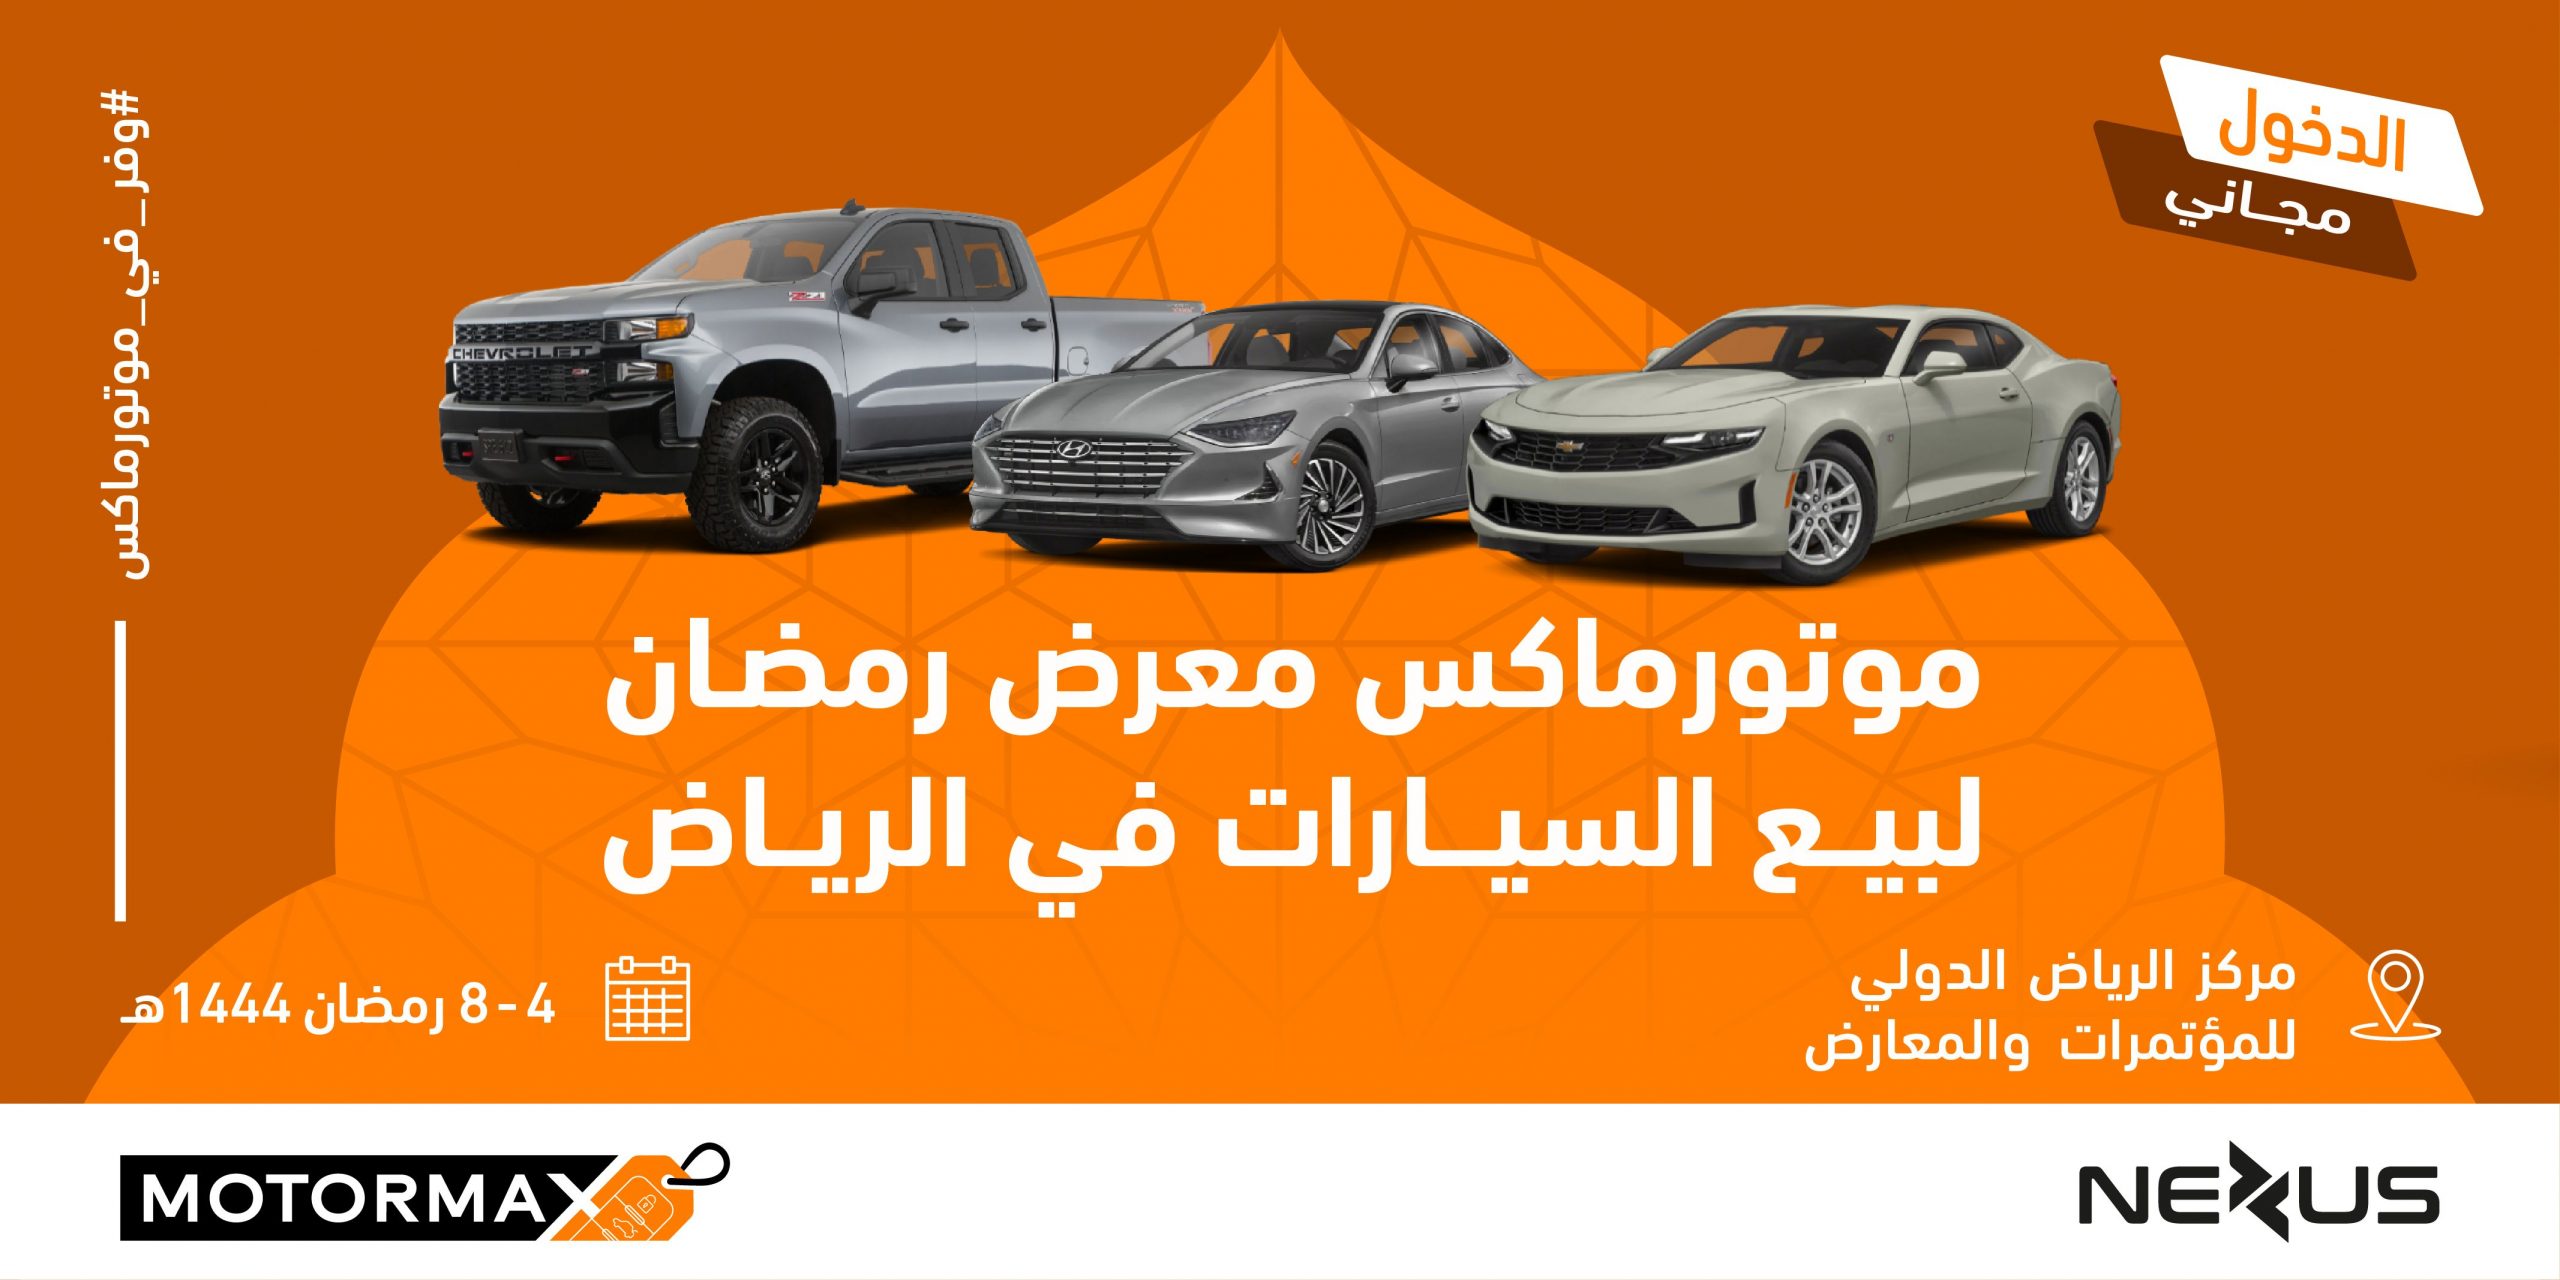 معرض رمضان الاستهلاكي للسيارات "موتورماكس" يستقبل زواره خلال شهر رمضان المبارك في مركز الرياض الدولي للمؤتمرات والمعارض 17